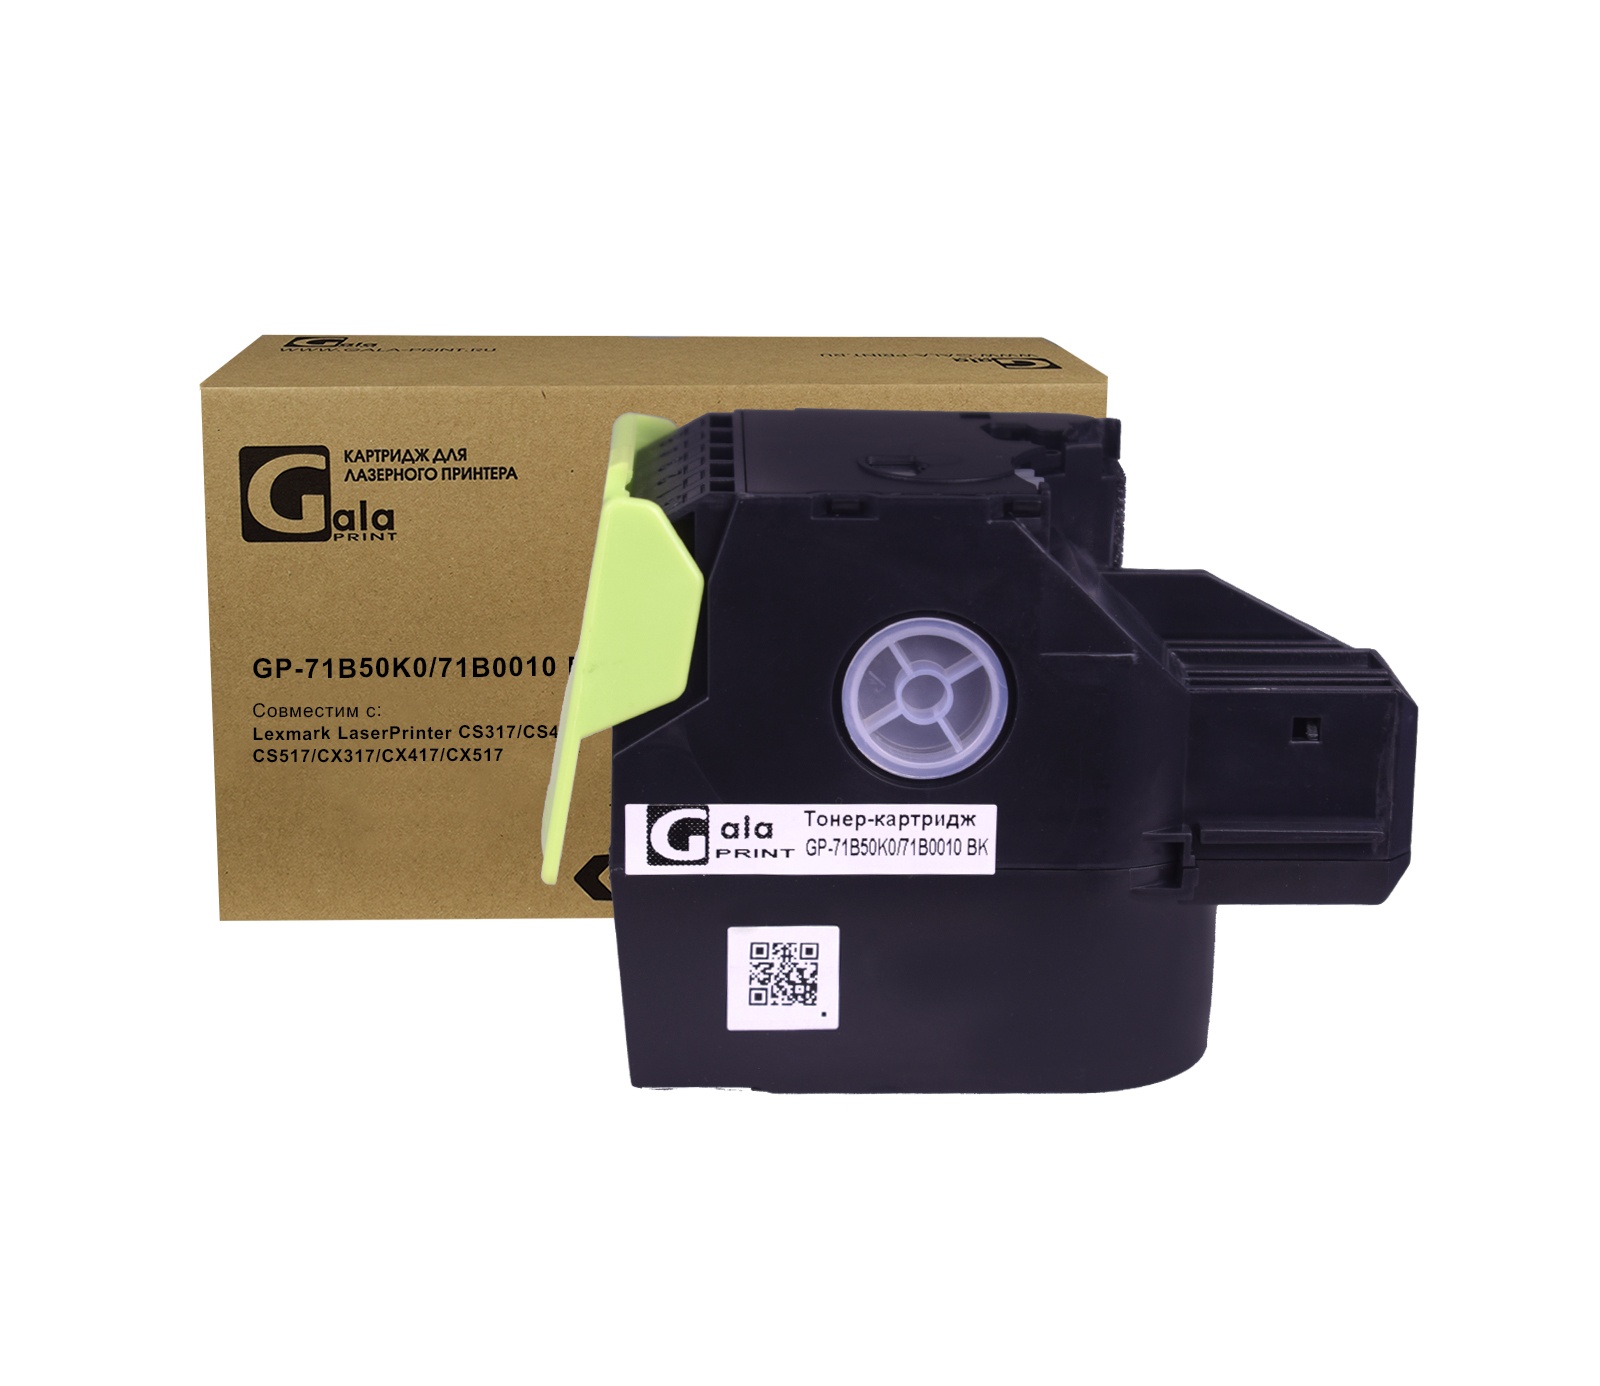 Тонер-картридж GP-71B50K0/71B0010 для принтеров Lexmark LaserPrinter CS317/CS417/CS517/CX317/CX417/CX517 Black 3000 копий GalaPrint